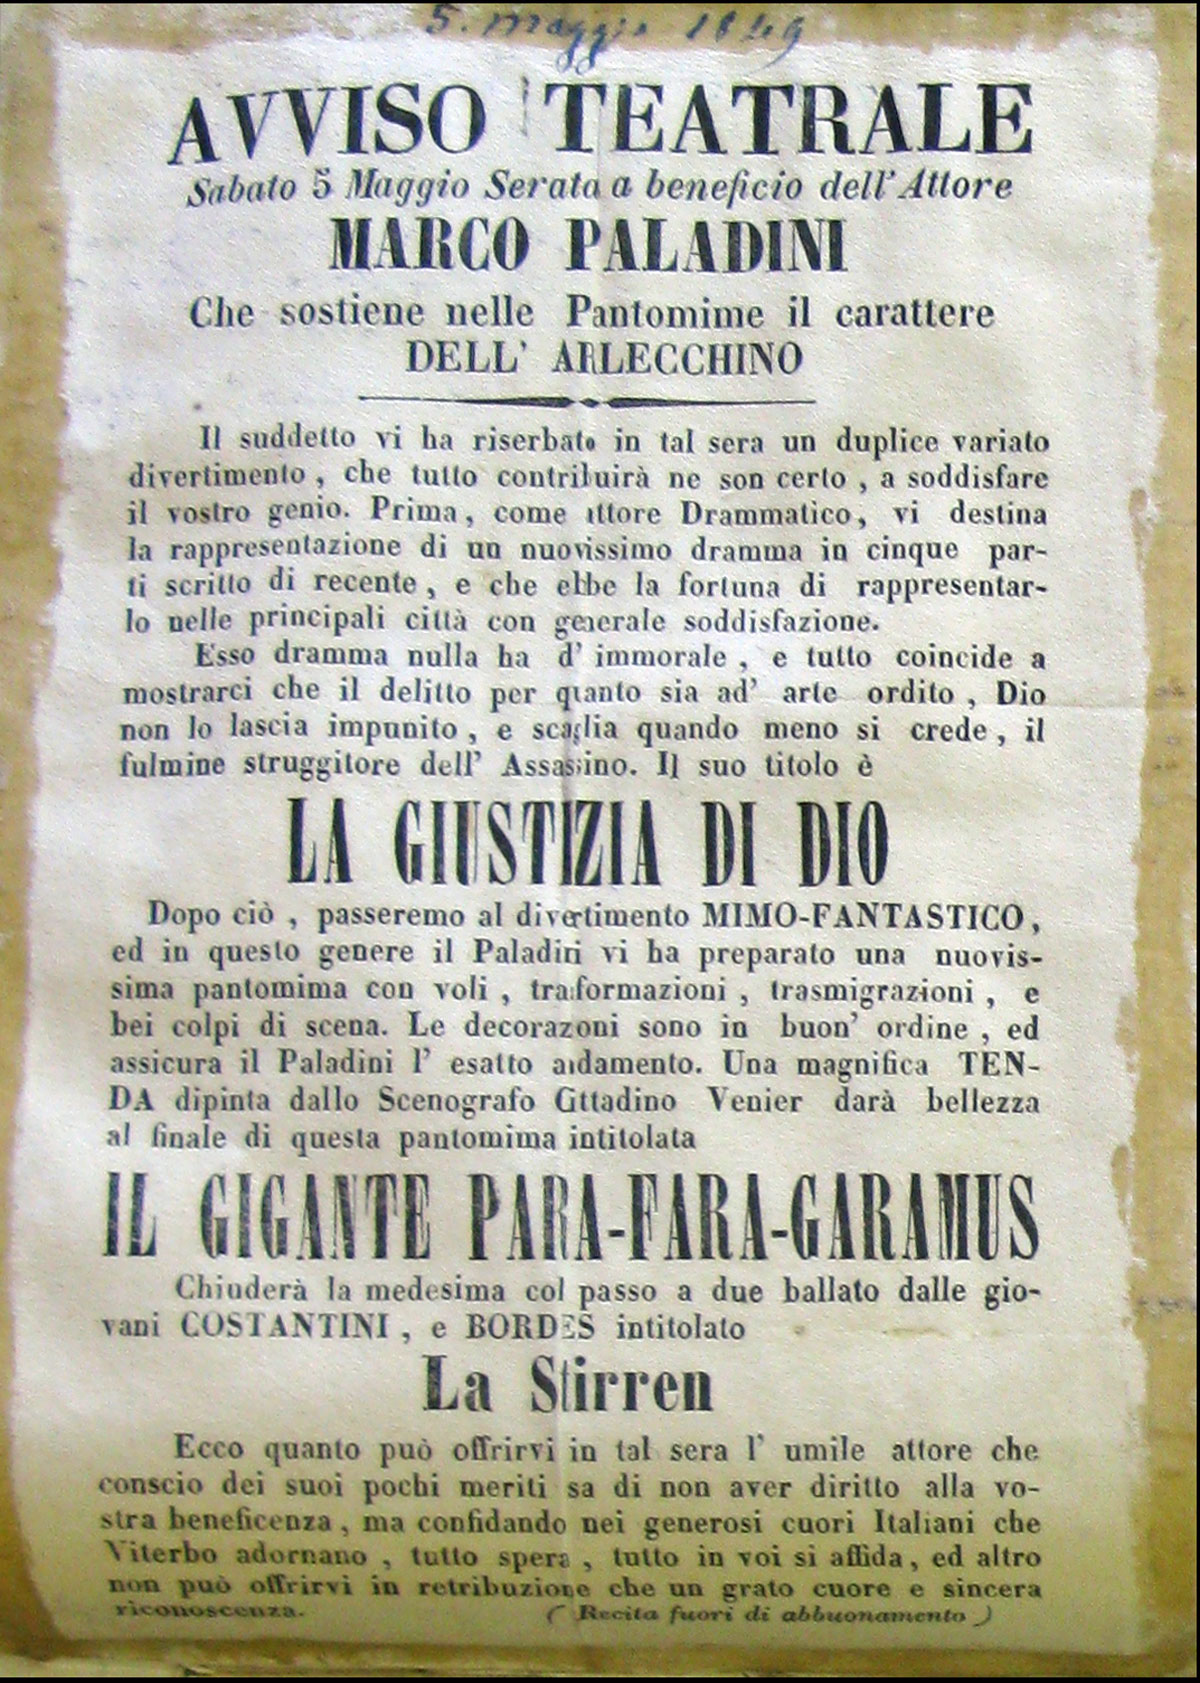 Viterbo, 1849. Beneficiata per Marco Paladini. Fig. 3